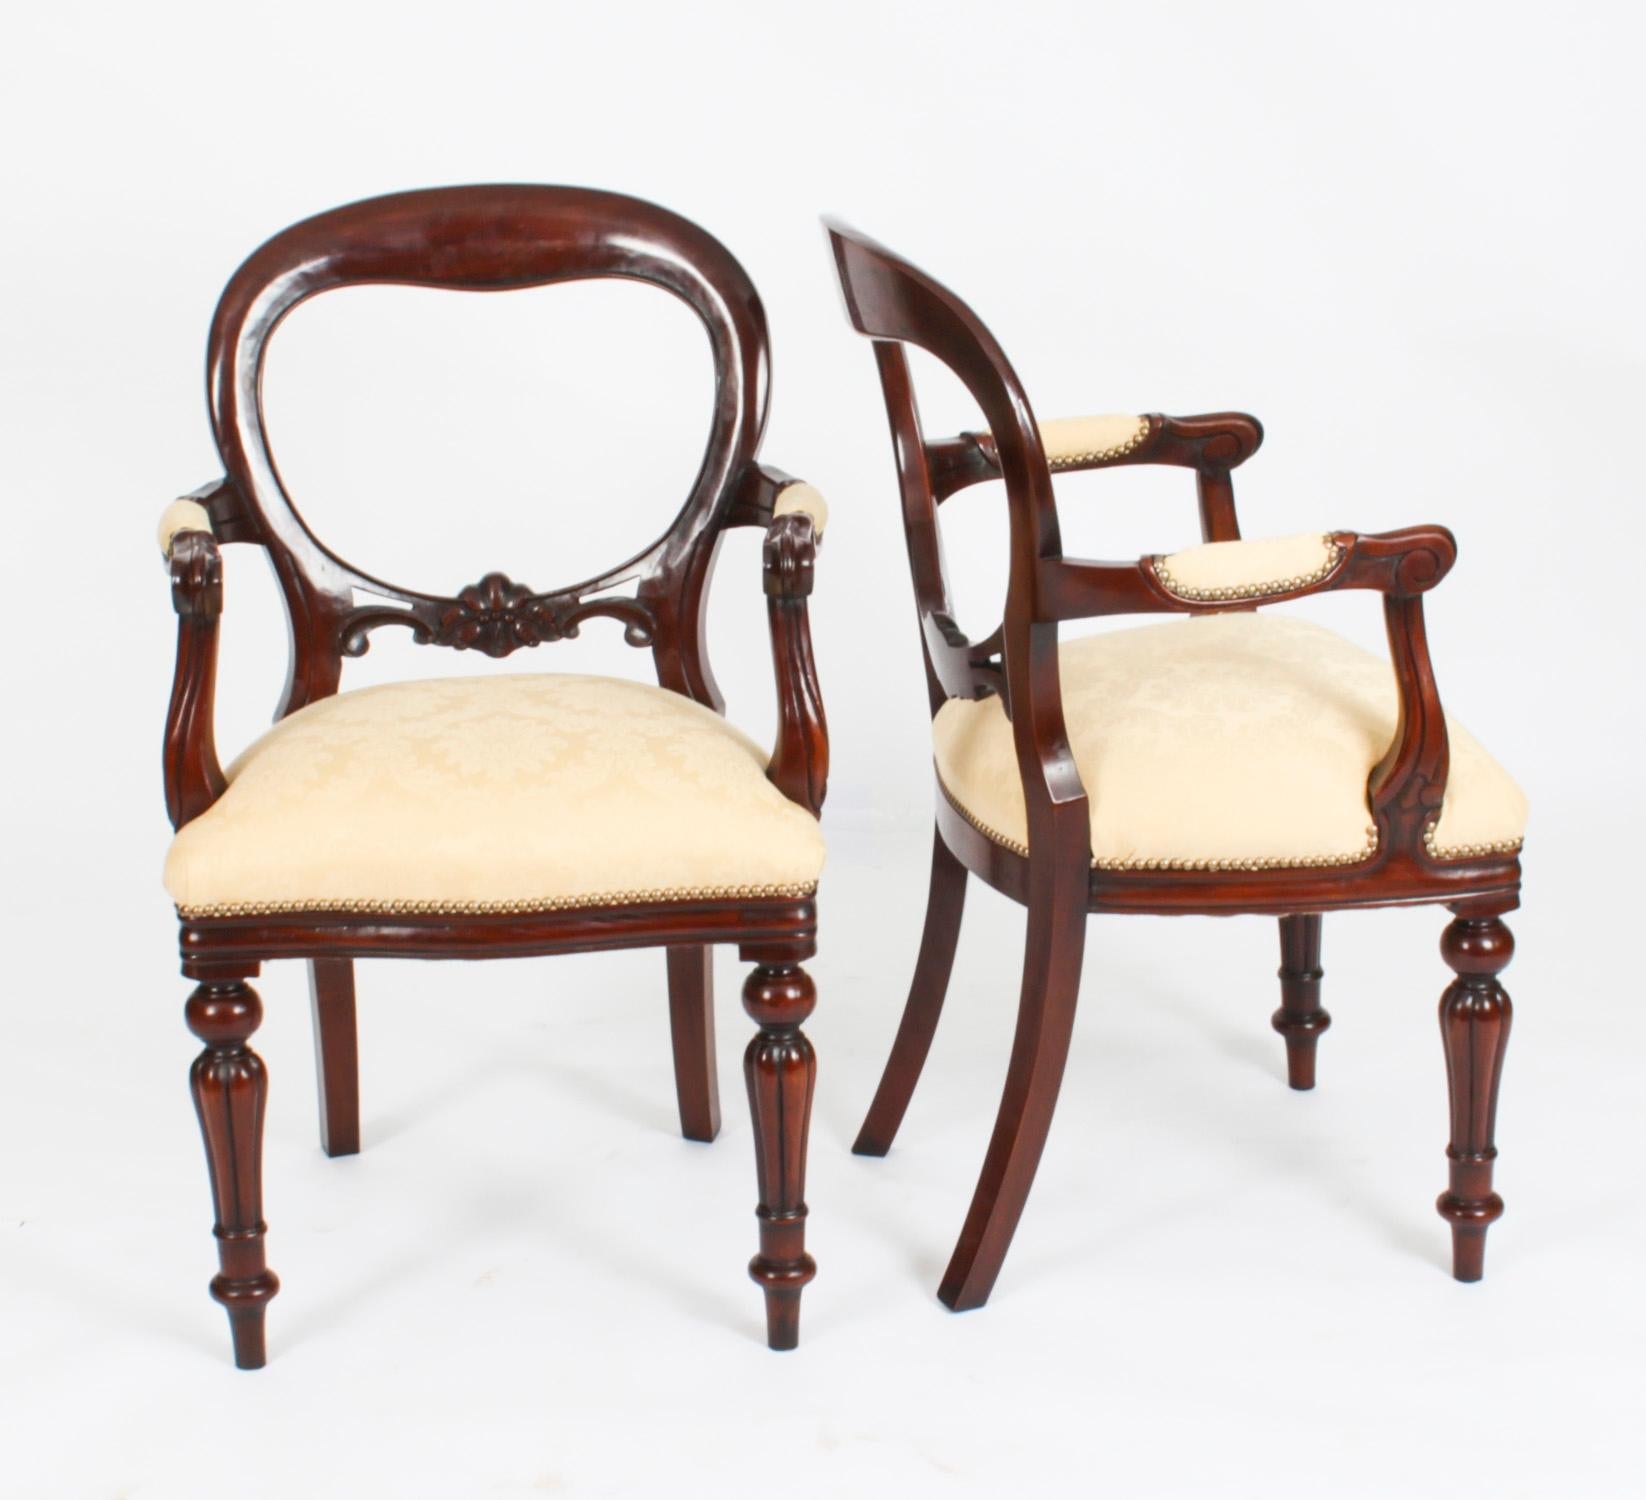 Il s'agit d'un ensemble vintage absolument fantastique de quatorze chaises de salle à manger à dossier ballon, datant de la seconde moitié du 20ème siècle.

Ces chaises ont été fabriquées de main de maître dans un magnifique acajou massif. La